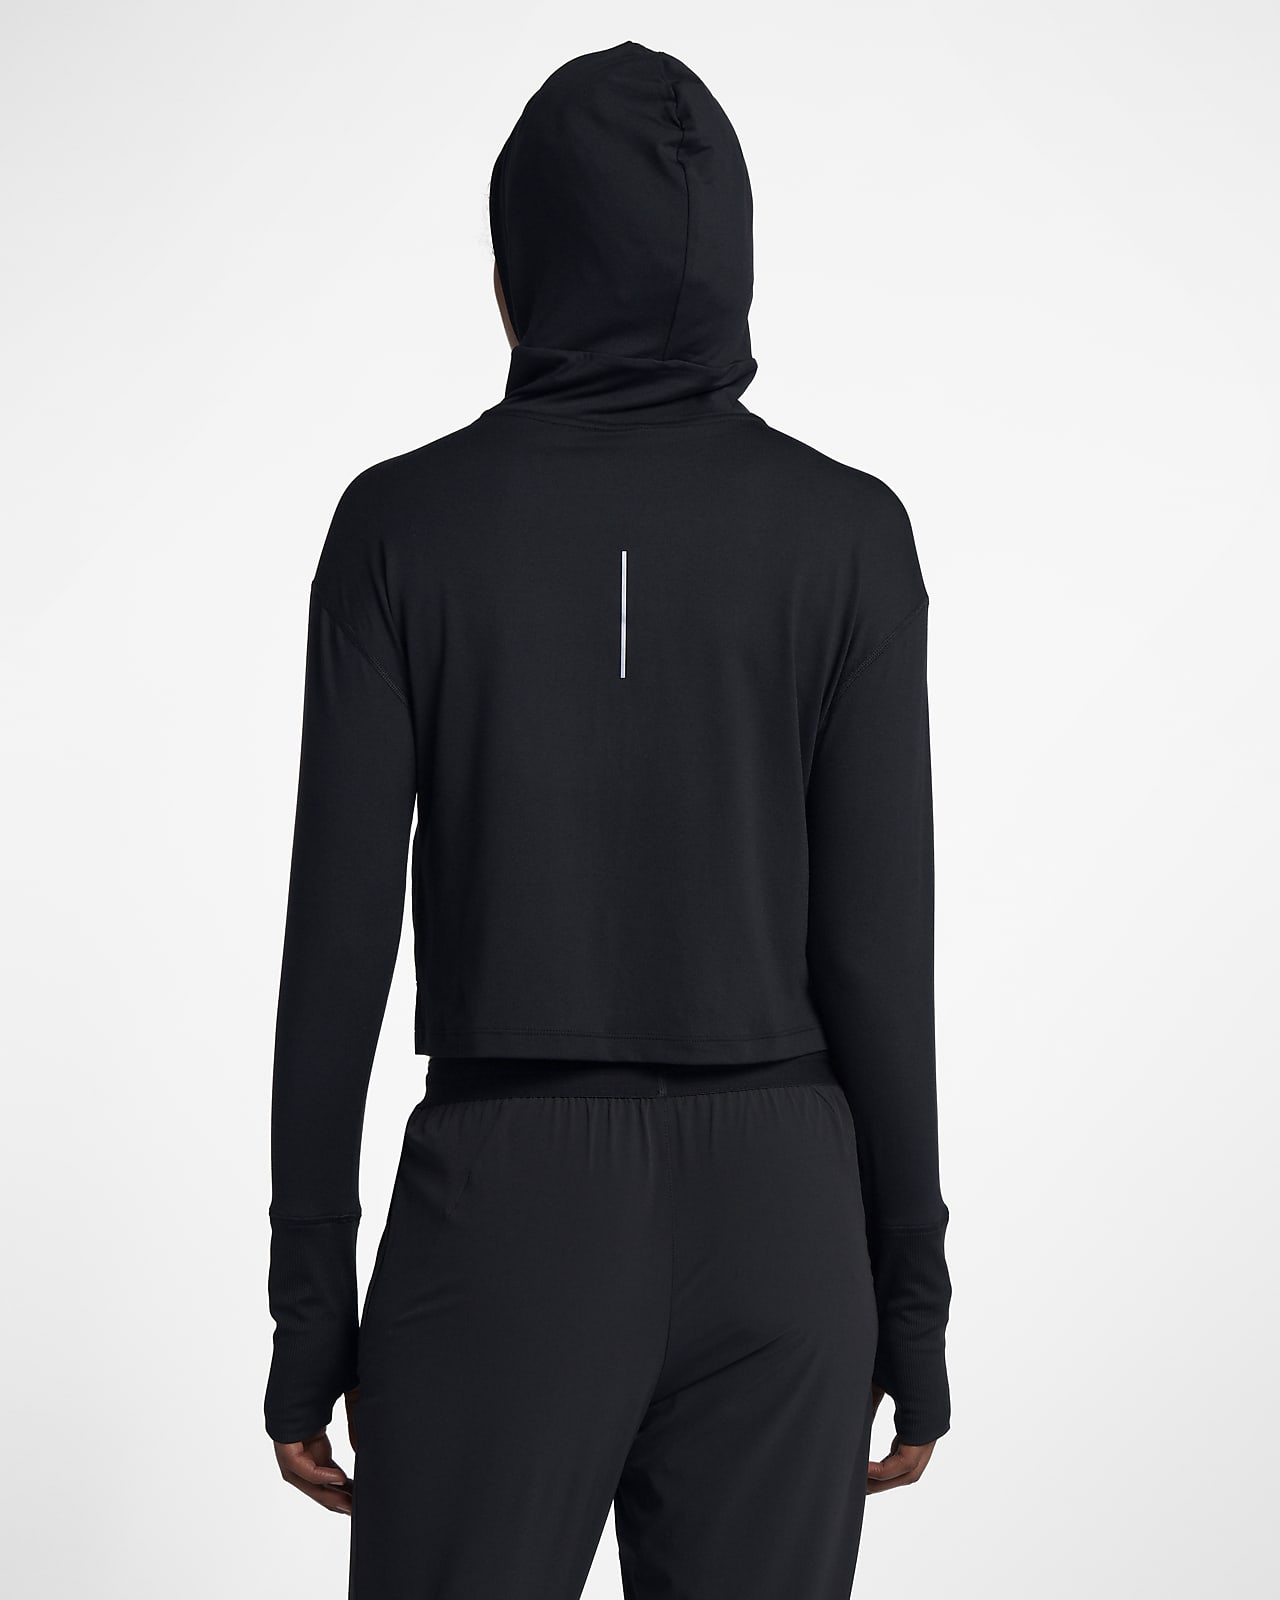 nike women's element full zip running hoodie